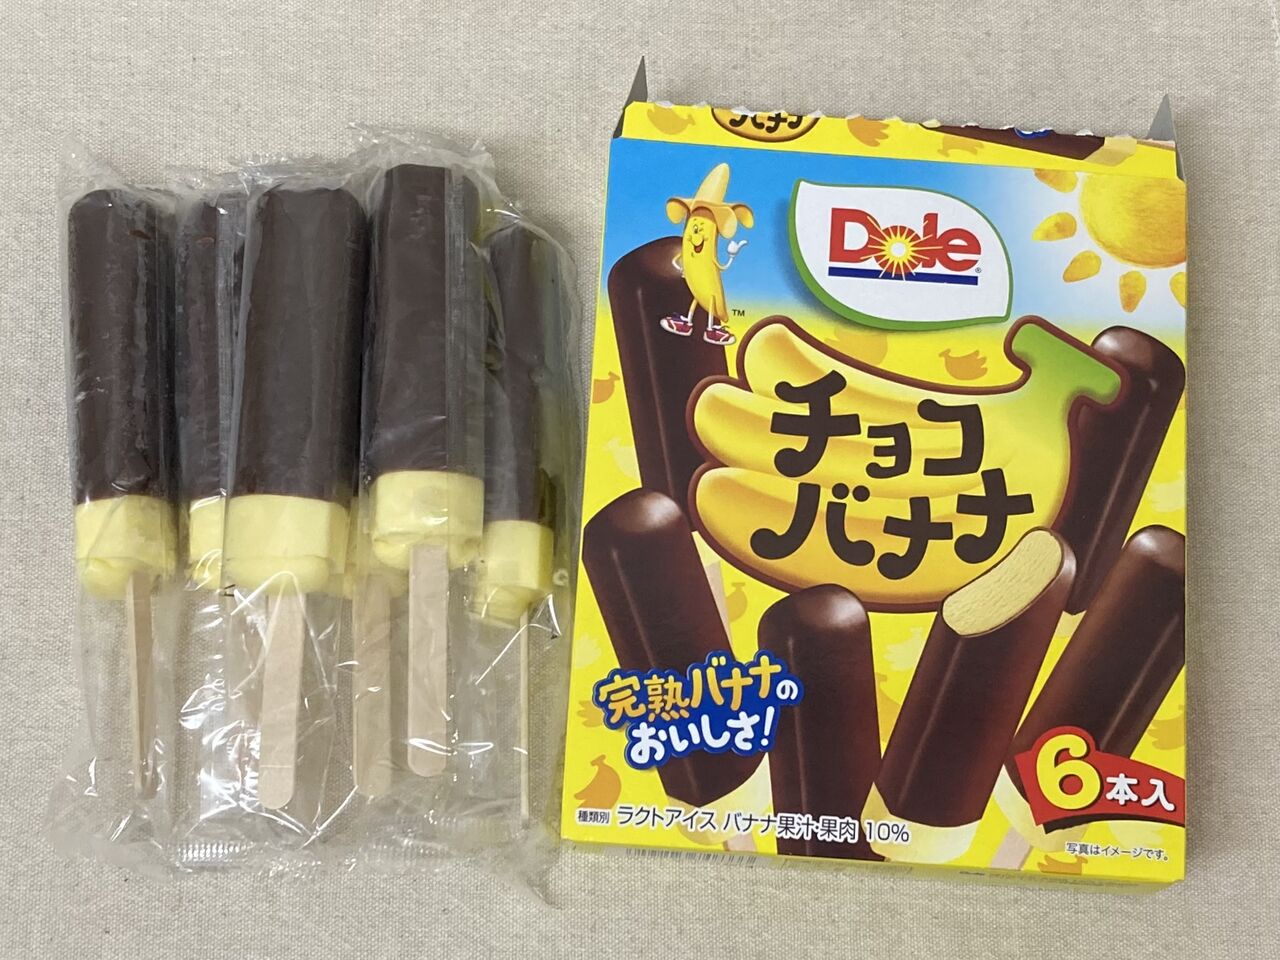 ロッテ Dole チョコバナナ６本入 完熟バナナのおいしさ 22 04 02 Sat 手紙は今までの住所に送ってくださいも 旧ののブログ 変な日本語を使っているので見られたくない 定期